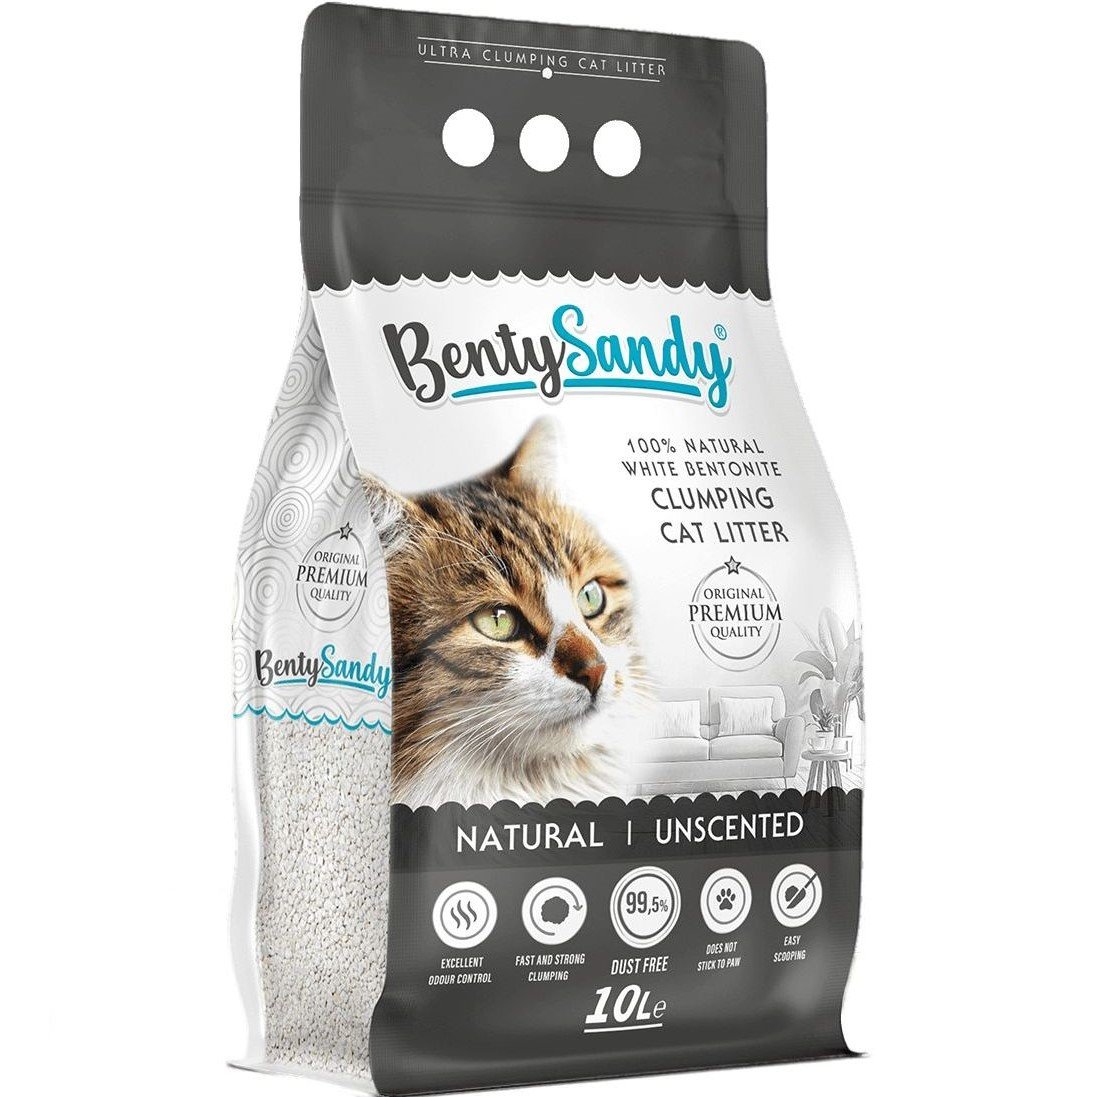 Наполнитель для кошачьего туалета Benty Sandy Natural Unscented бентонитовый без запаха 10 л - фото 1